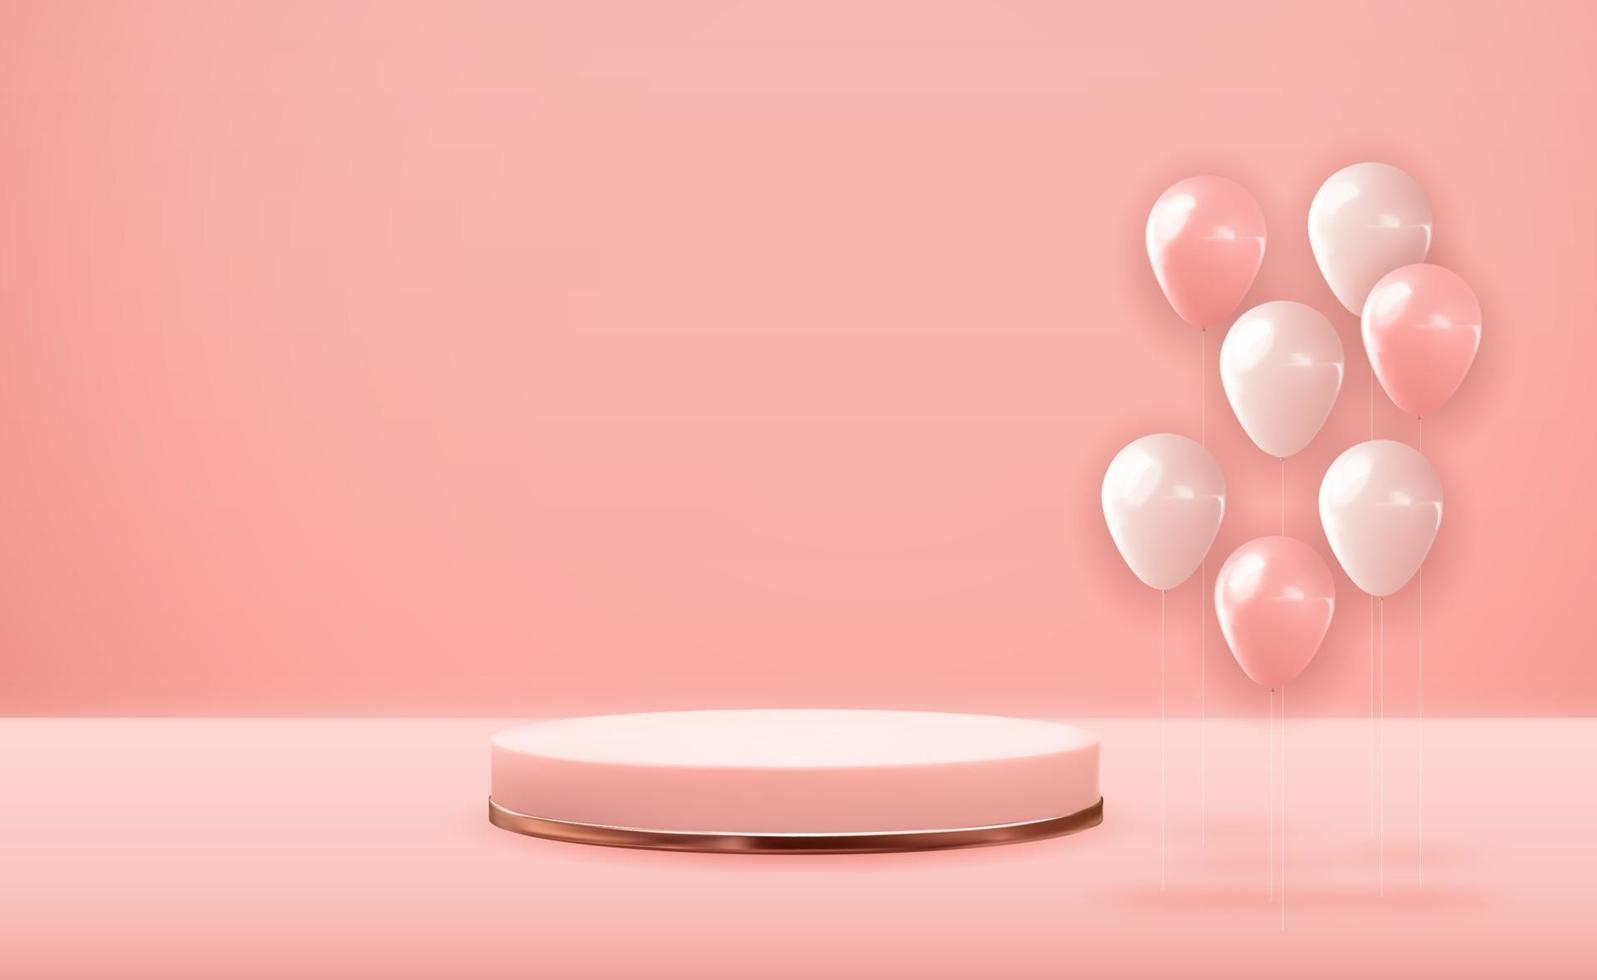 rosa guld piedestal över rosa pastellfärgad naturlig bakgrund med festballonger. trendig tom podiumdisplay för kosmetisk produktpresentation, modetidning. kopia utrymme vektorillustration eps10 vektor